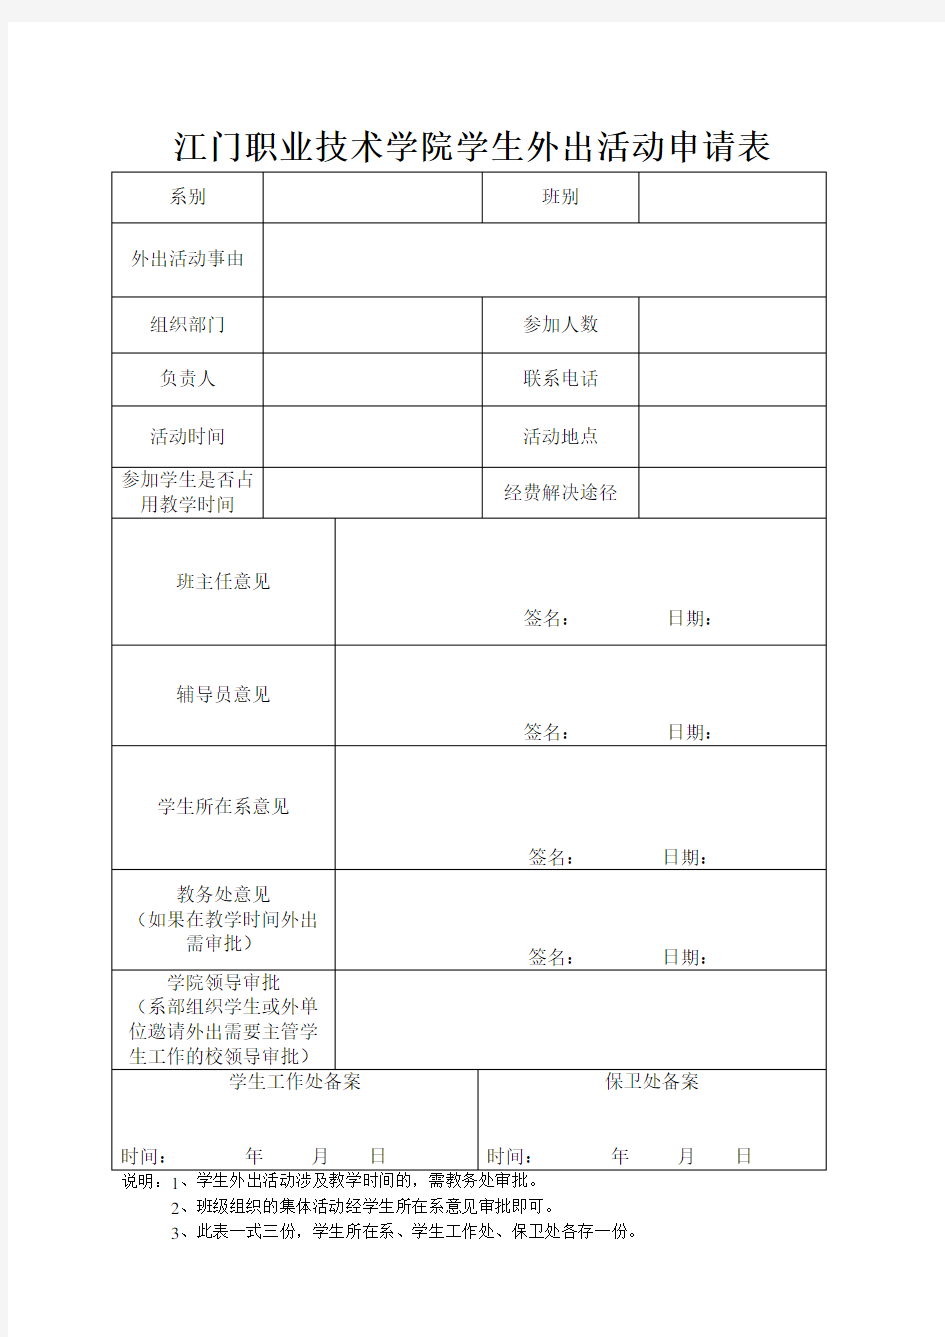 江门职业技术学院学生外出活动申请表